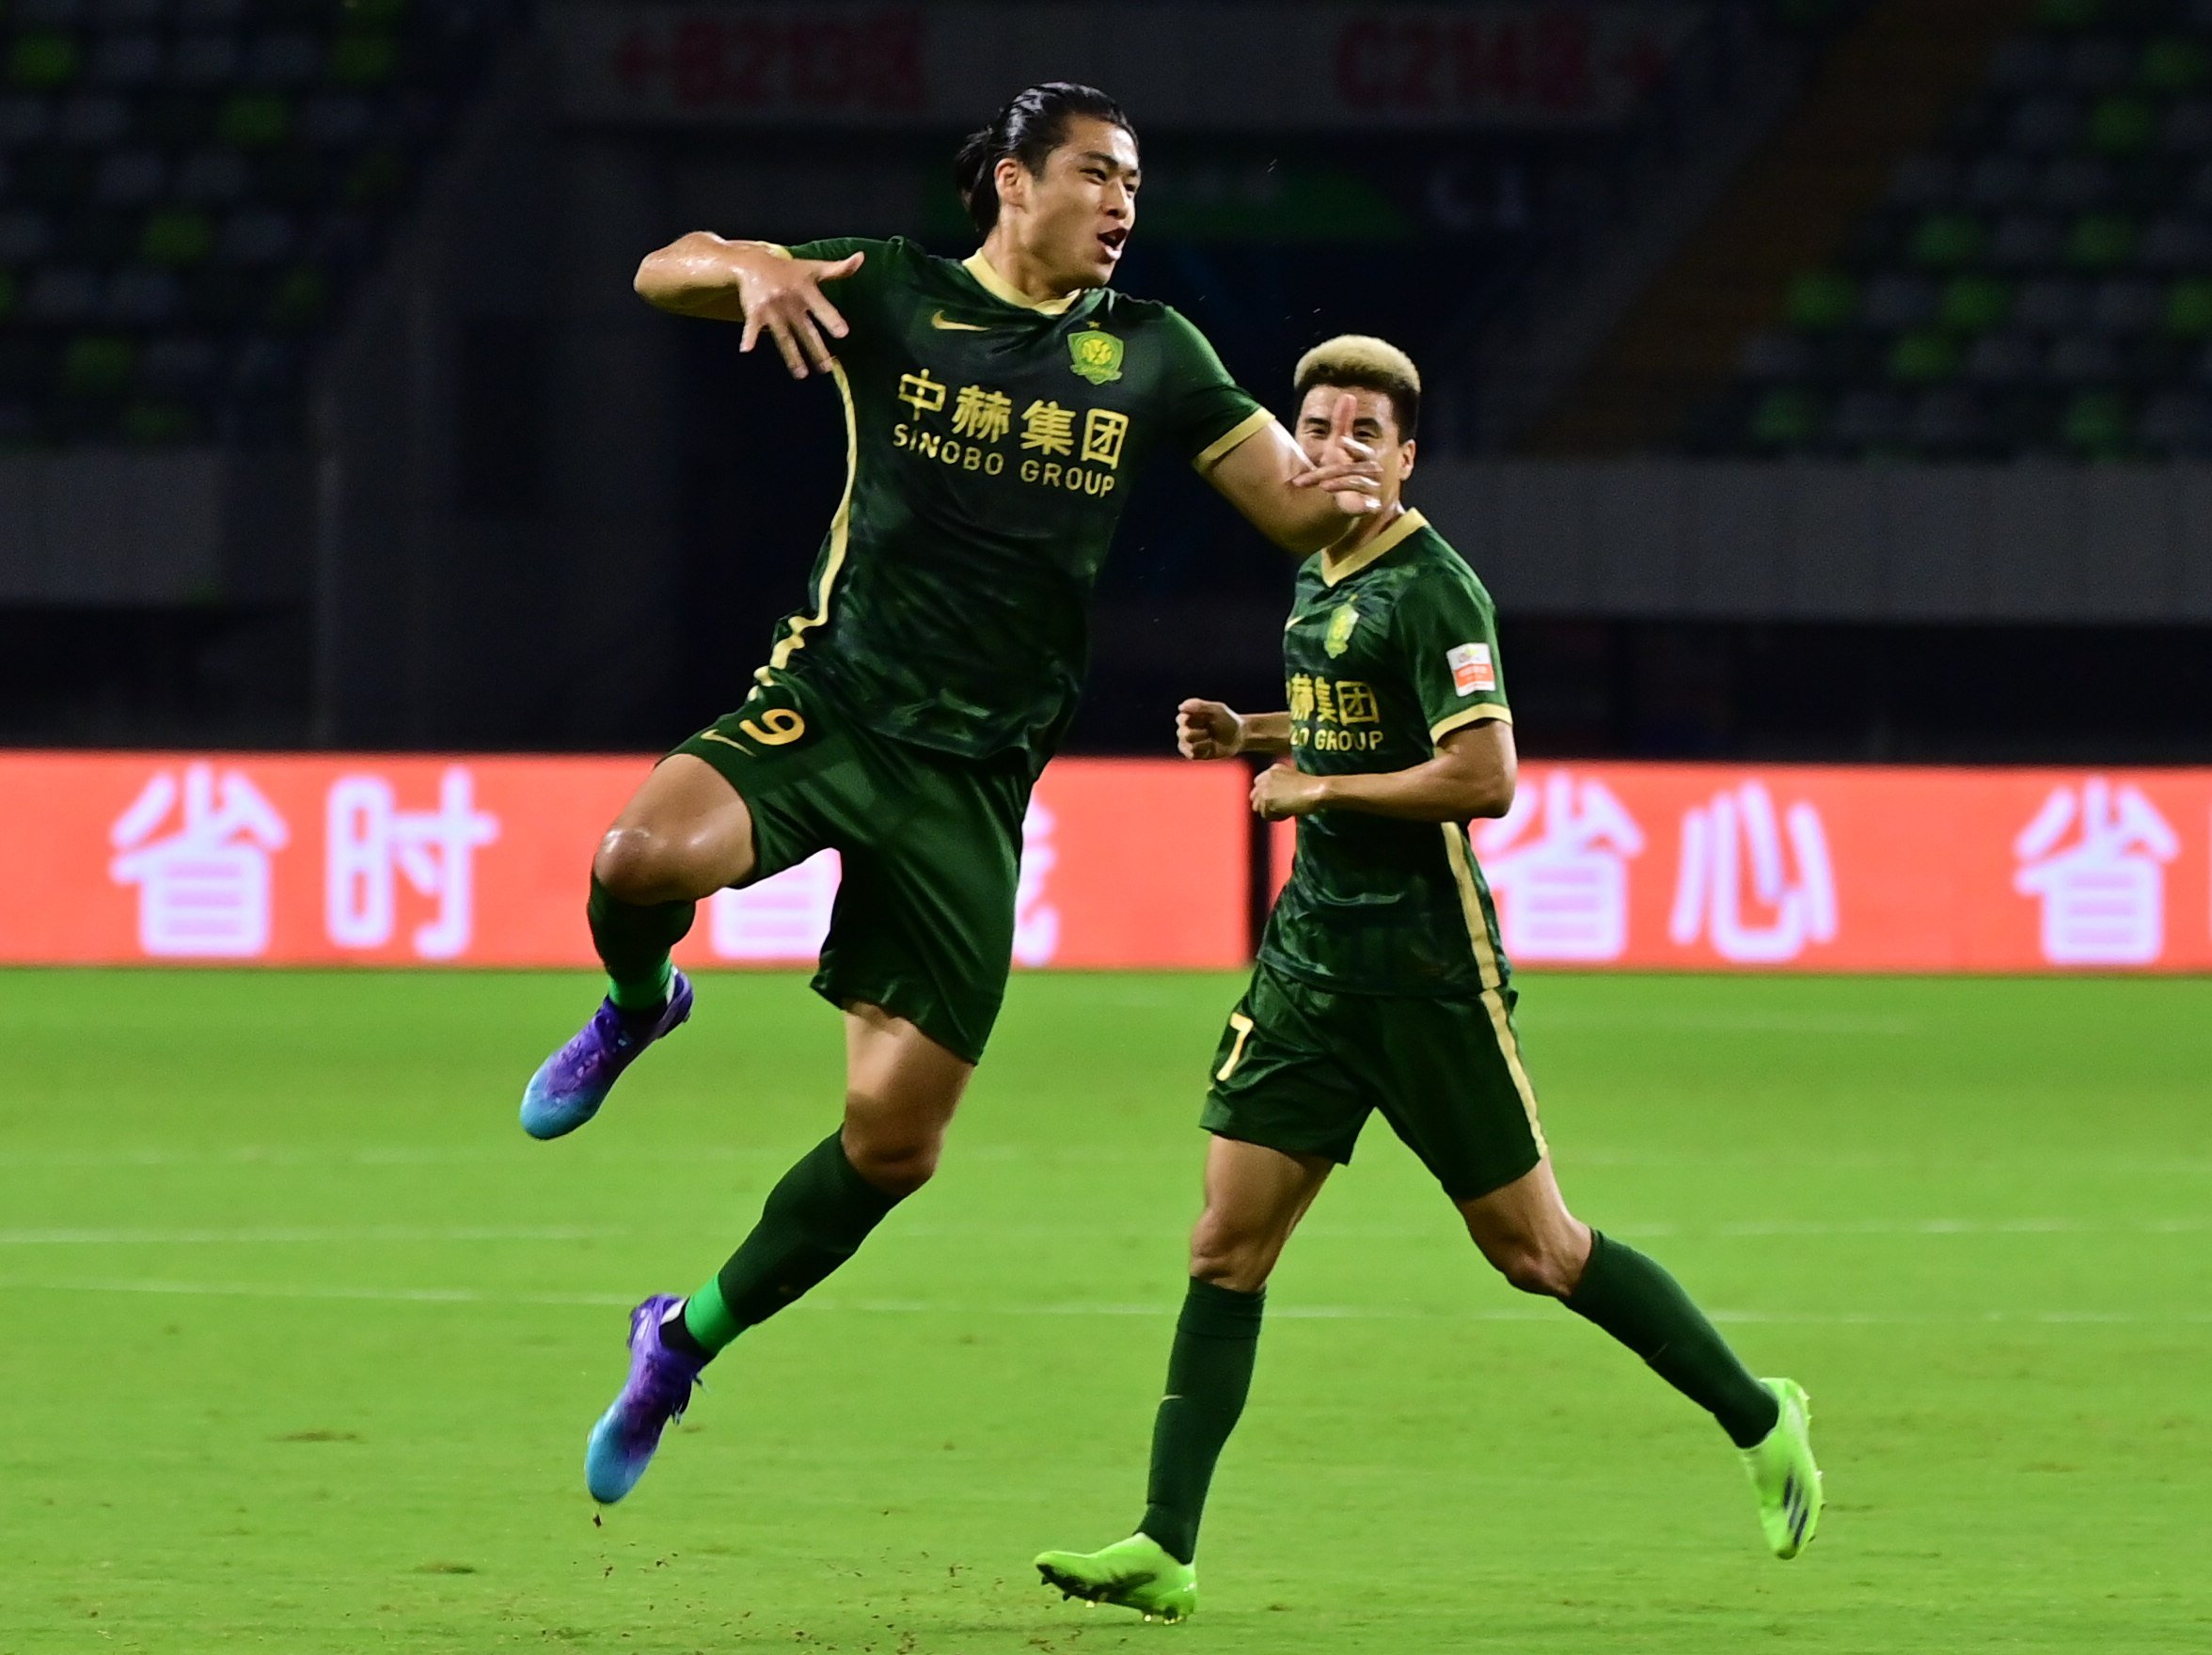 Zhang Yuning (left) of Beijing Guoan celebrates scoring during a 2022 Chinese Super League (CSL) match against Meizhou Hakka. Photo: Xinhua